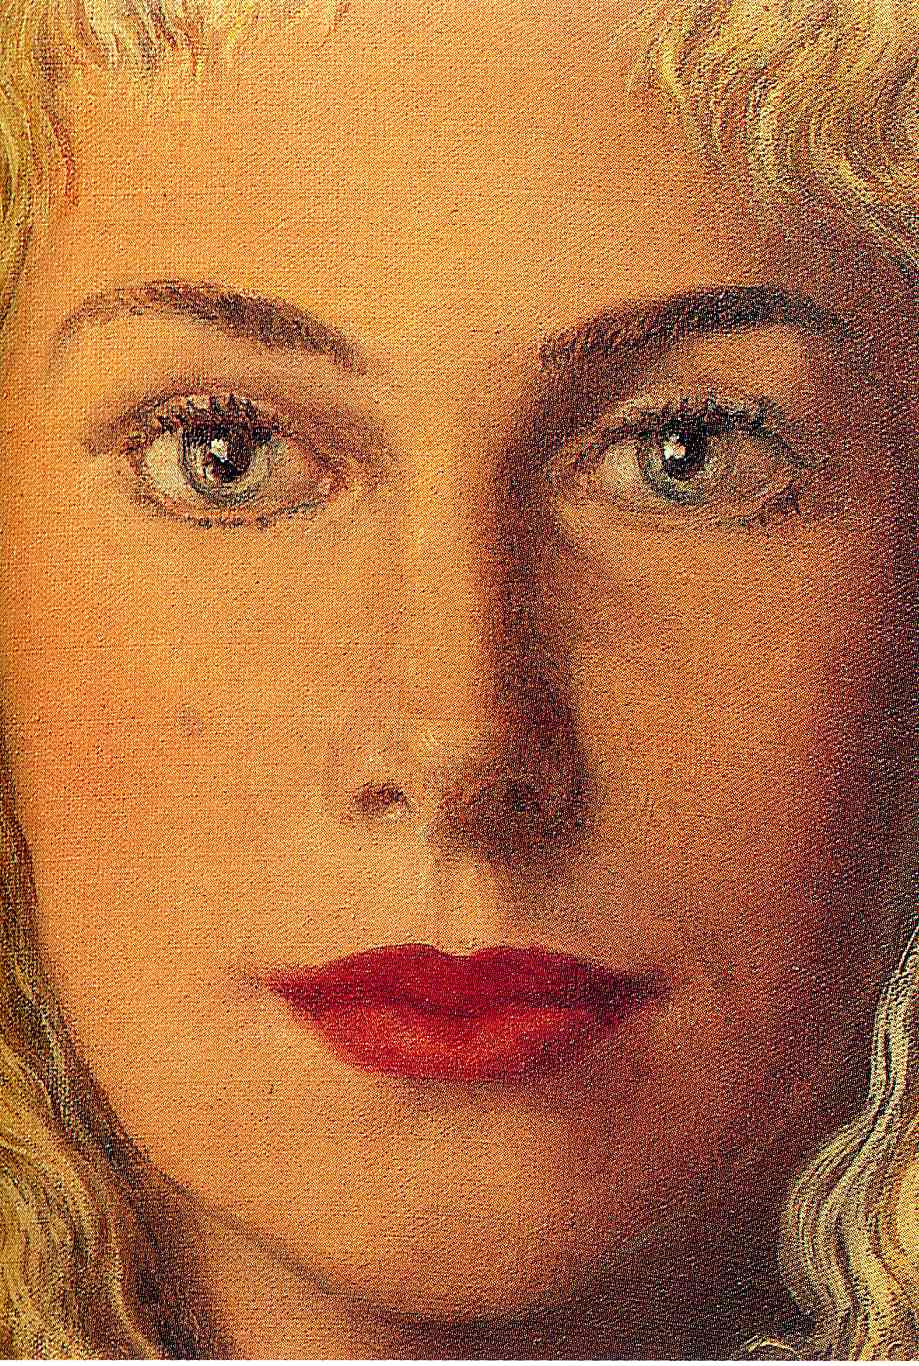 Anne-Marie Crowet (1956).